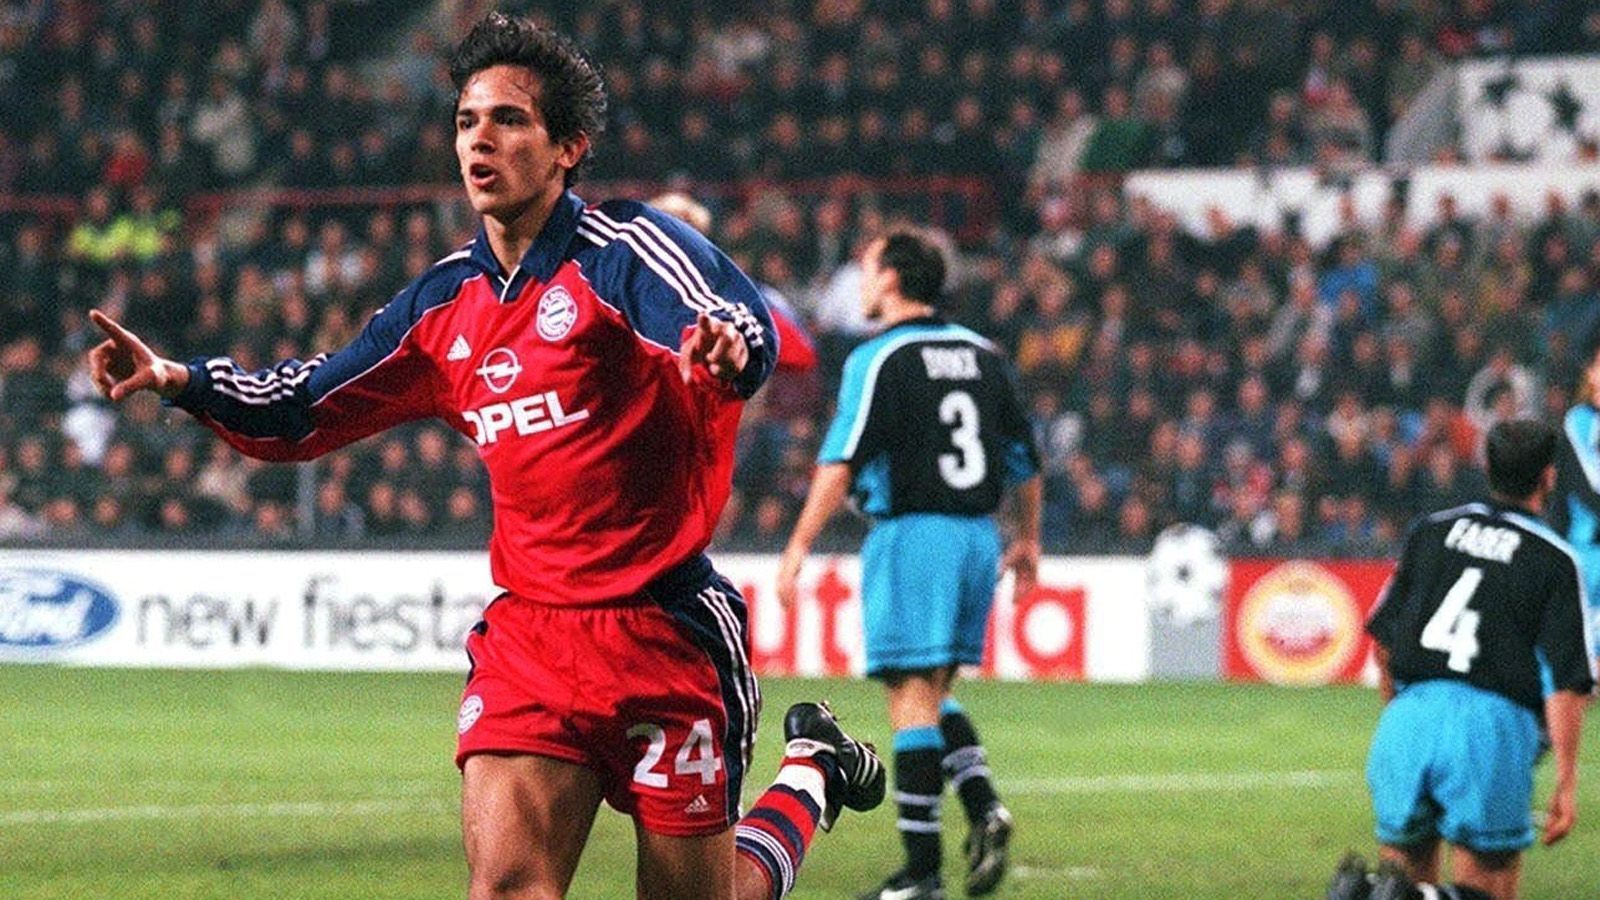 
                <strong>Platz 6: Roque Santa Cruz (18 Jahre und 30 Tage)</strong><br>
                Debütdatum: 15. September 1999 -Gegner: PSV Eindhoven -Position: Stürmer
              